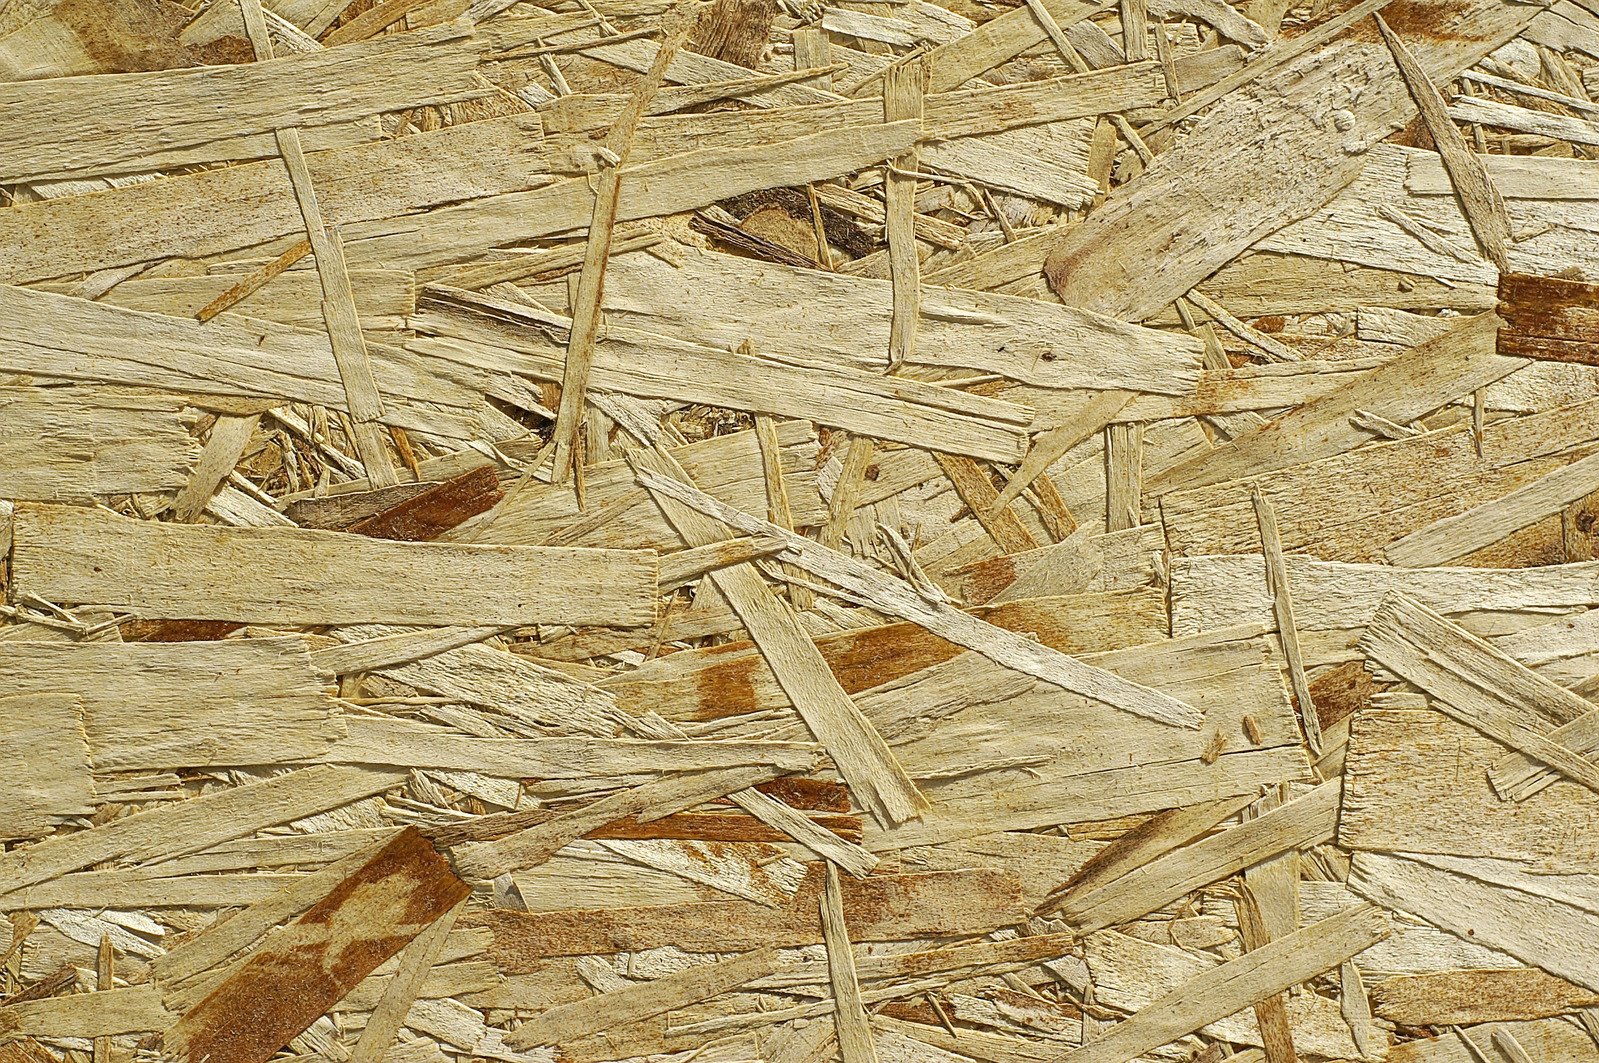 Materiały drewnopochodne - podkład z płyt OSB